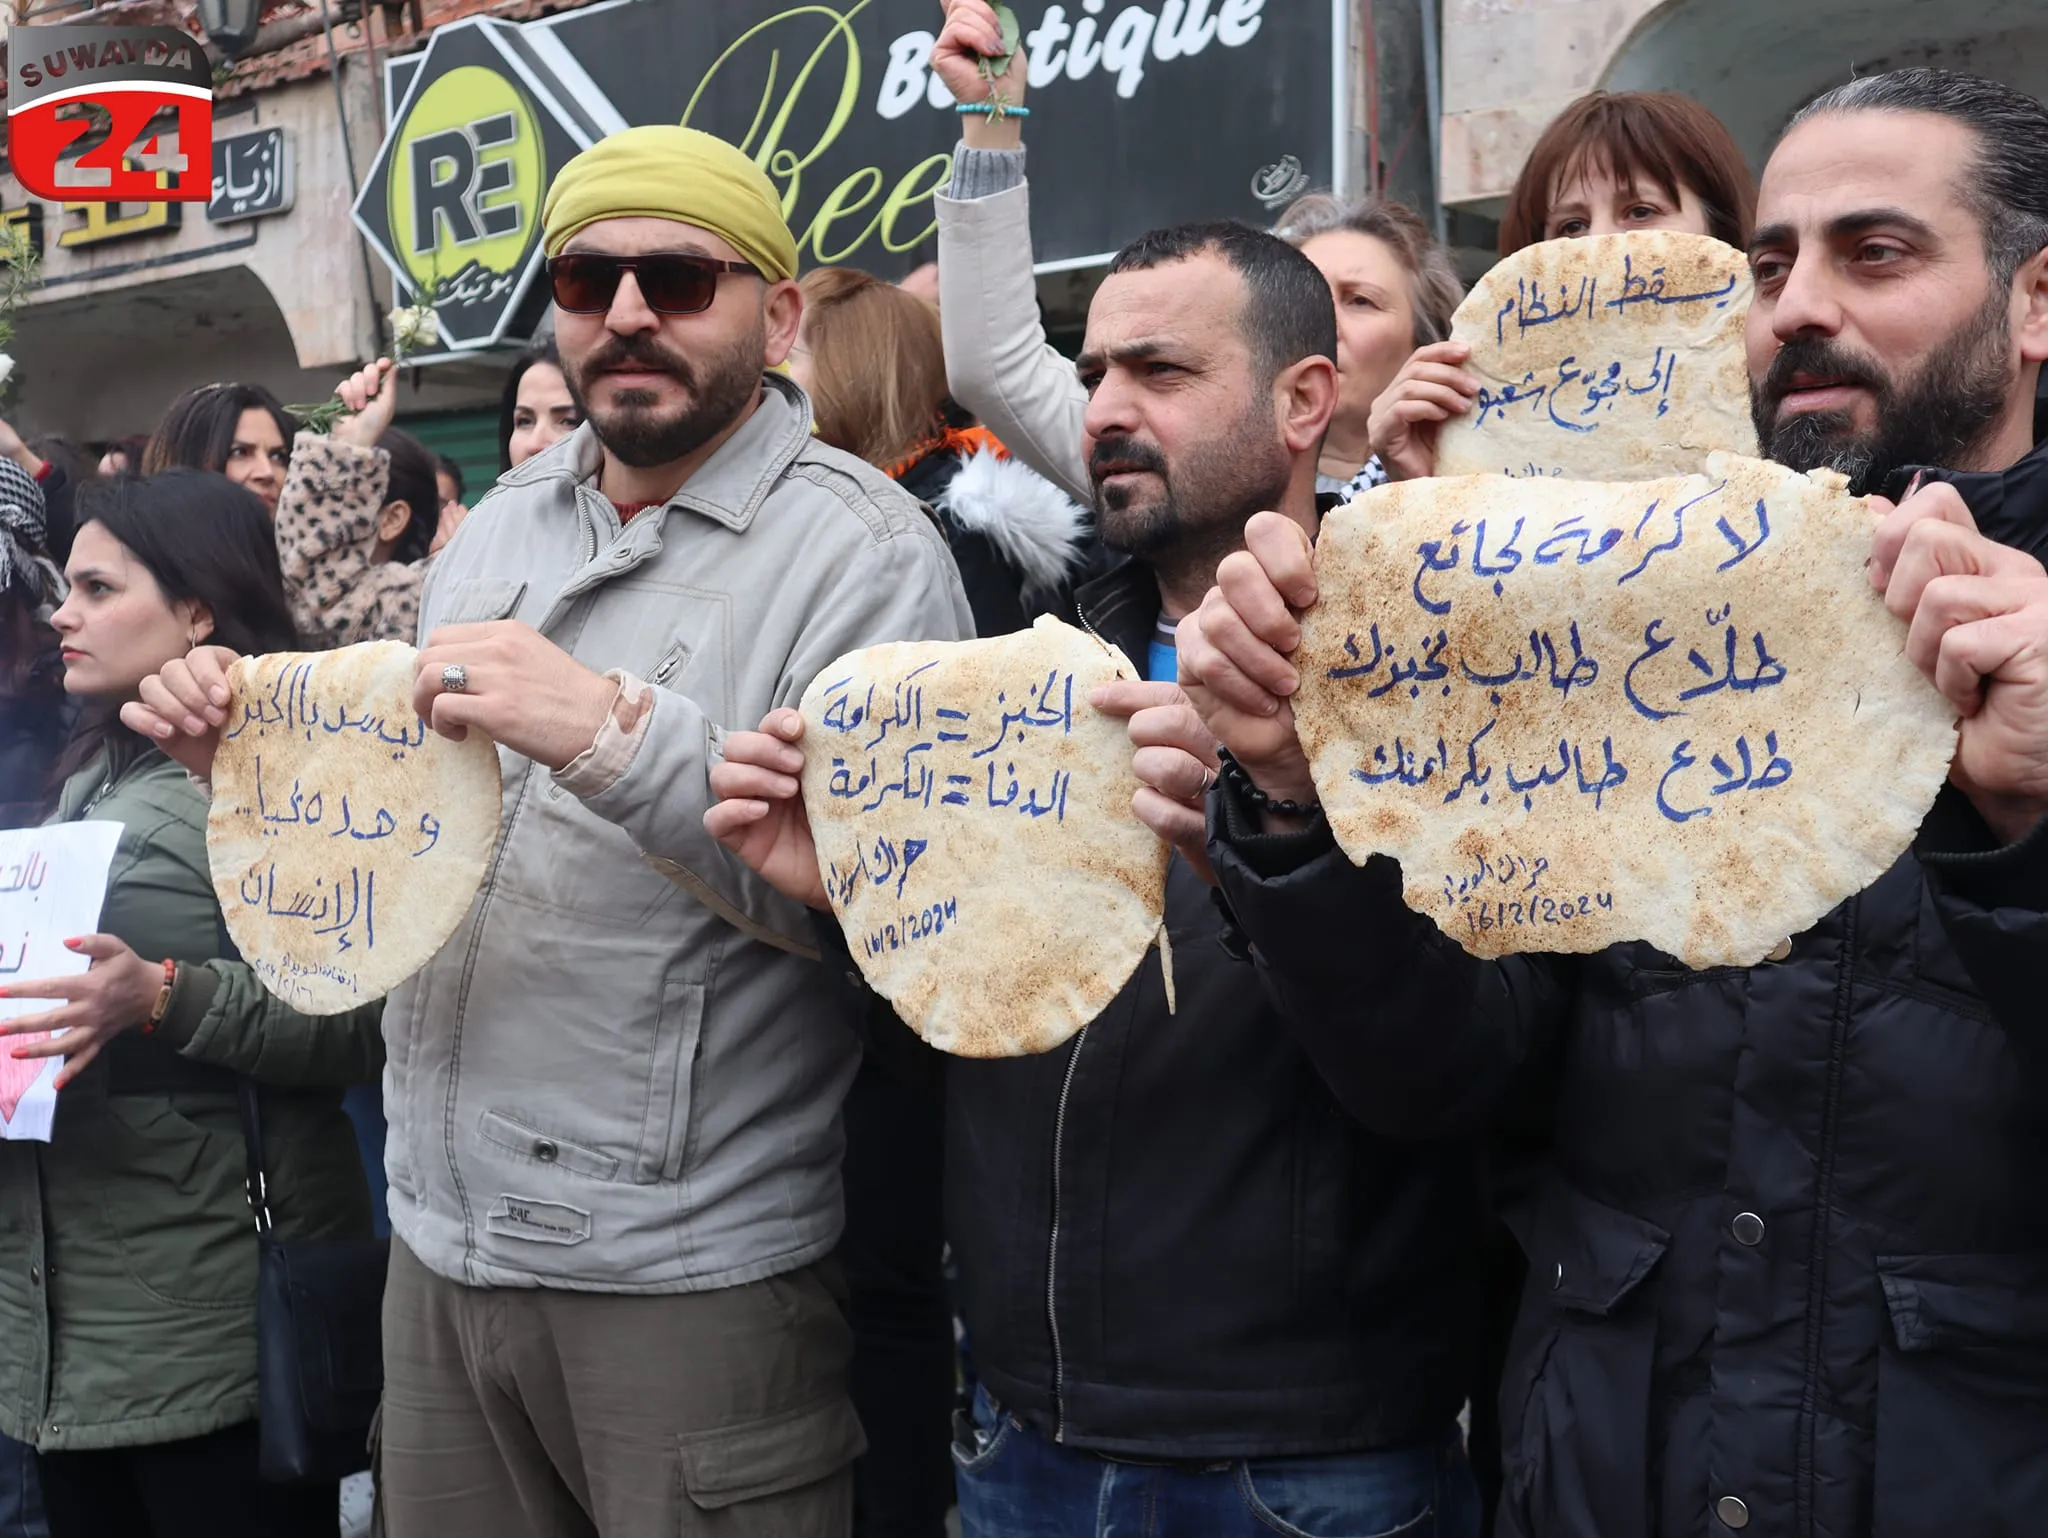 تظاهرة شعبية رفعت رغيف الخبز وطالبت بالتغيير في ساحة الكرامة بالسويداء